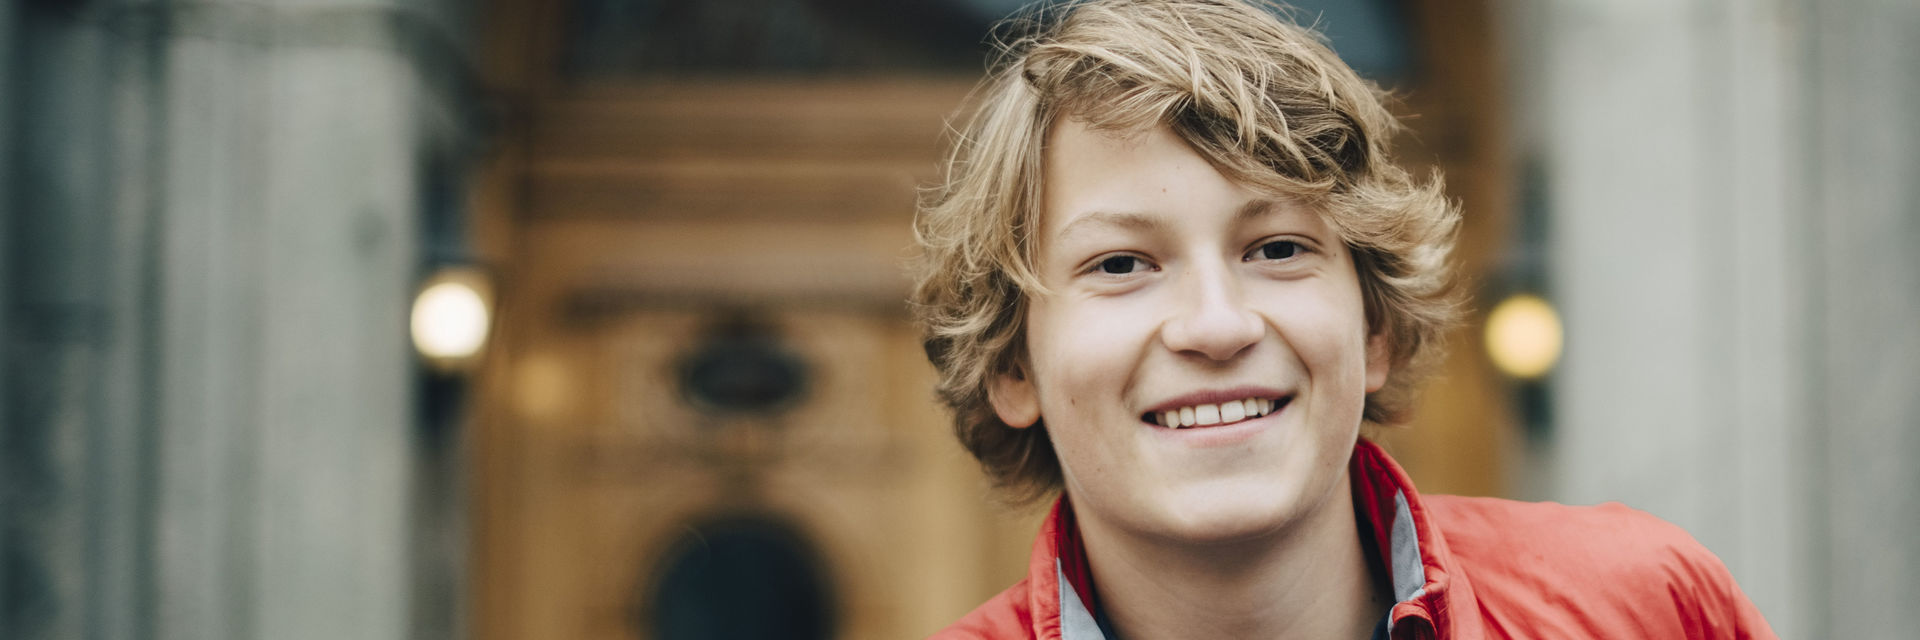 Jugend entscheidet – Lächelnder Junge vor einem Gebäude in der Stadt